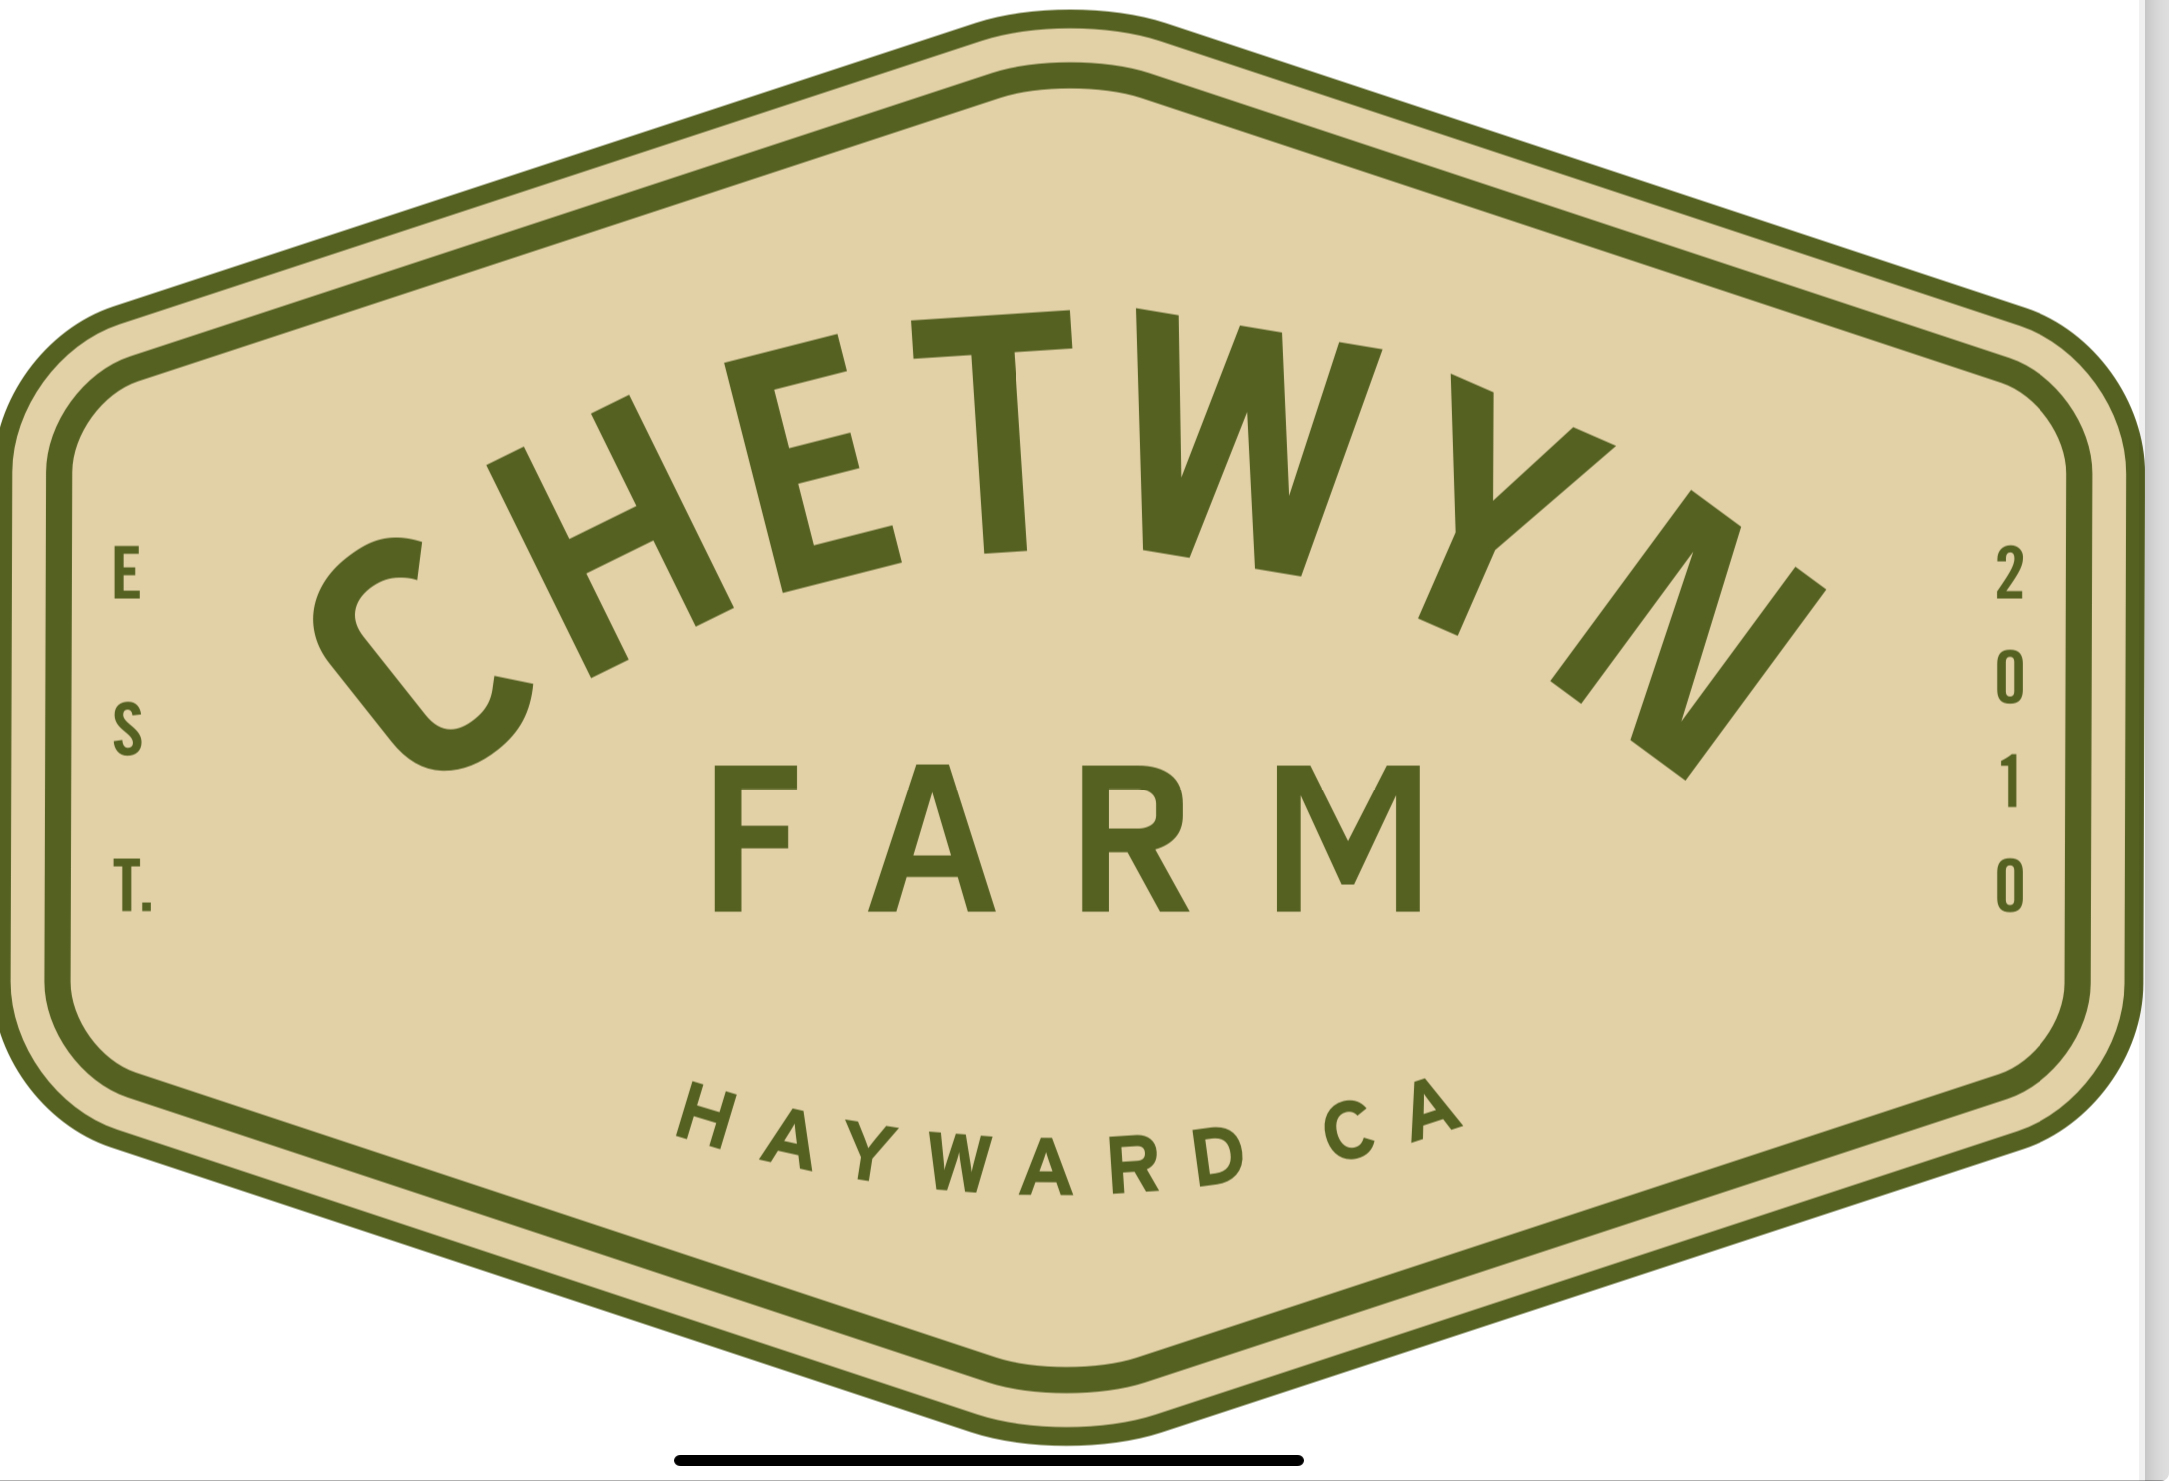 Chetwyn Farm